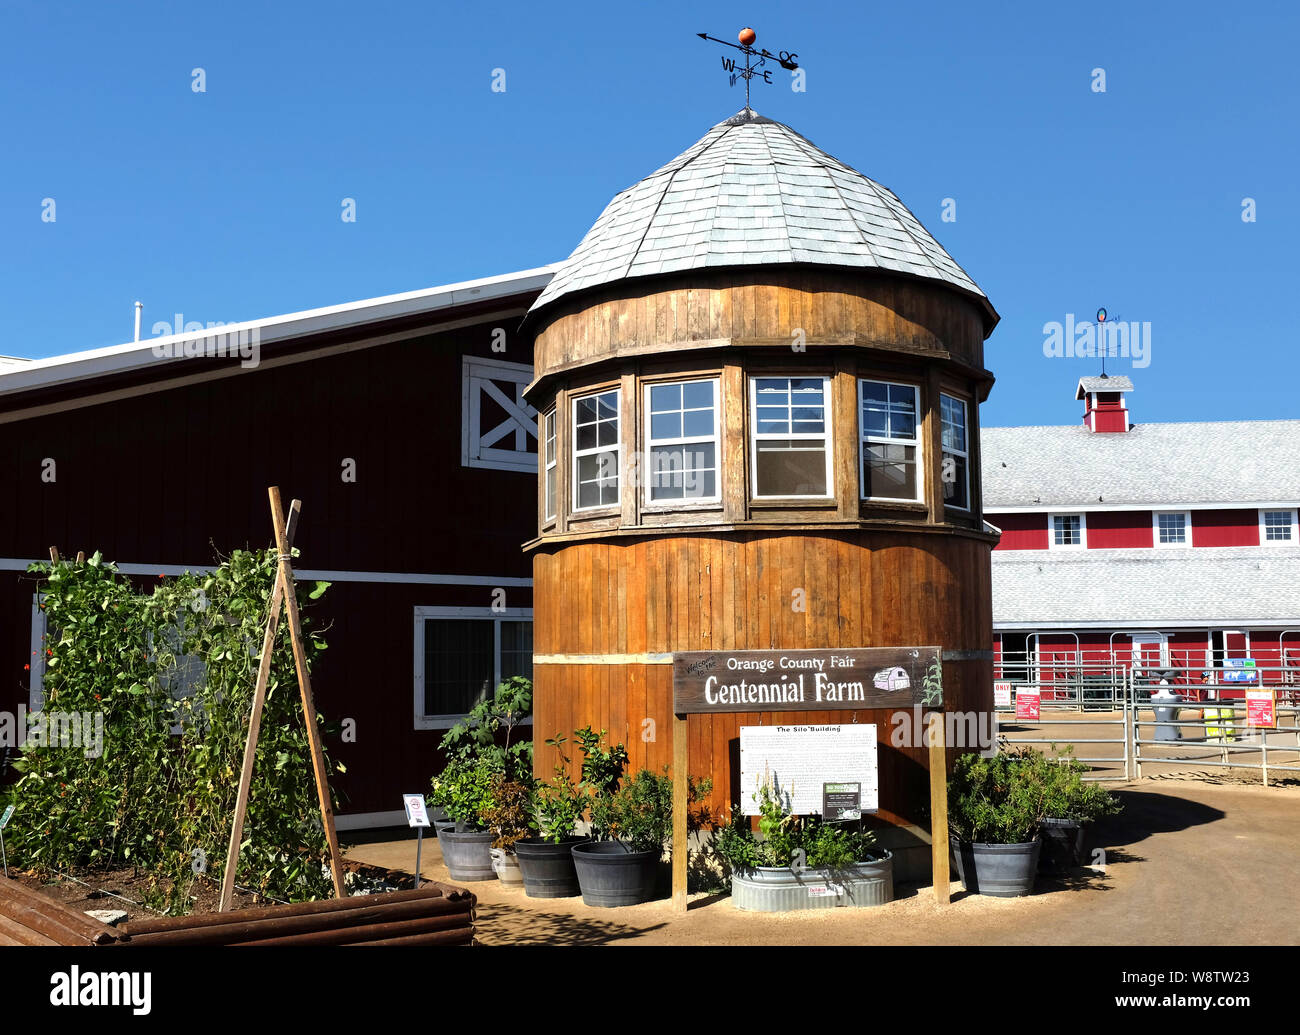 COSTA MESA, CALIFORNIA - AUG 8, 2019: The Silo Building at Centennial Farm in the Orange County Fairgrounds. Stock Photo